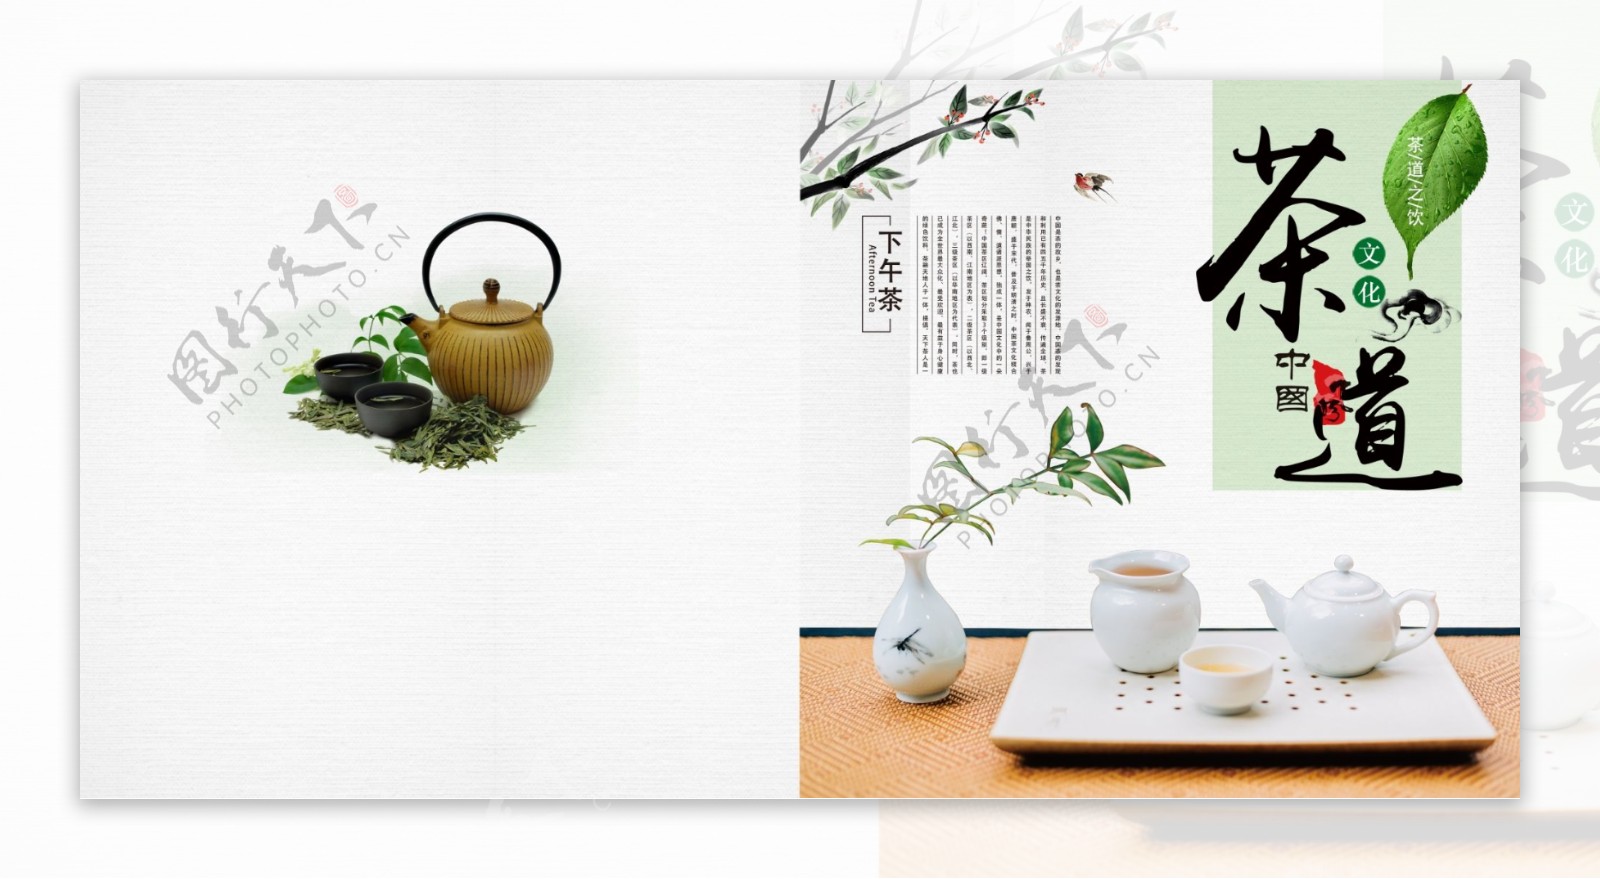 清新简约茶文化茶叶画册封面设计